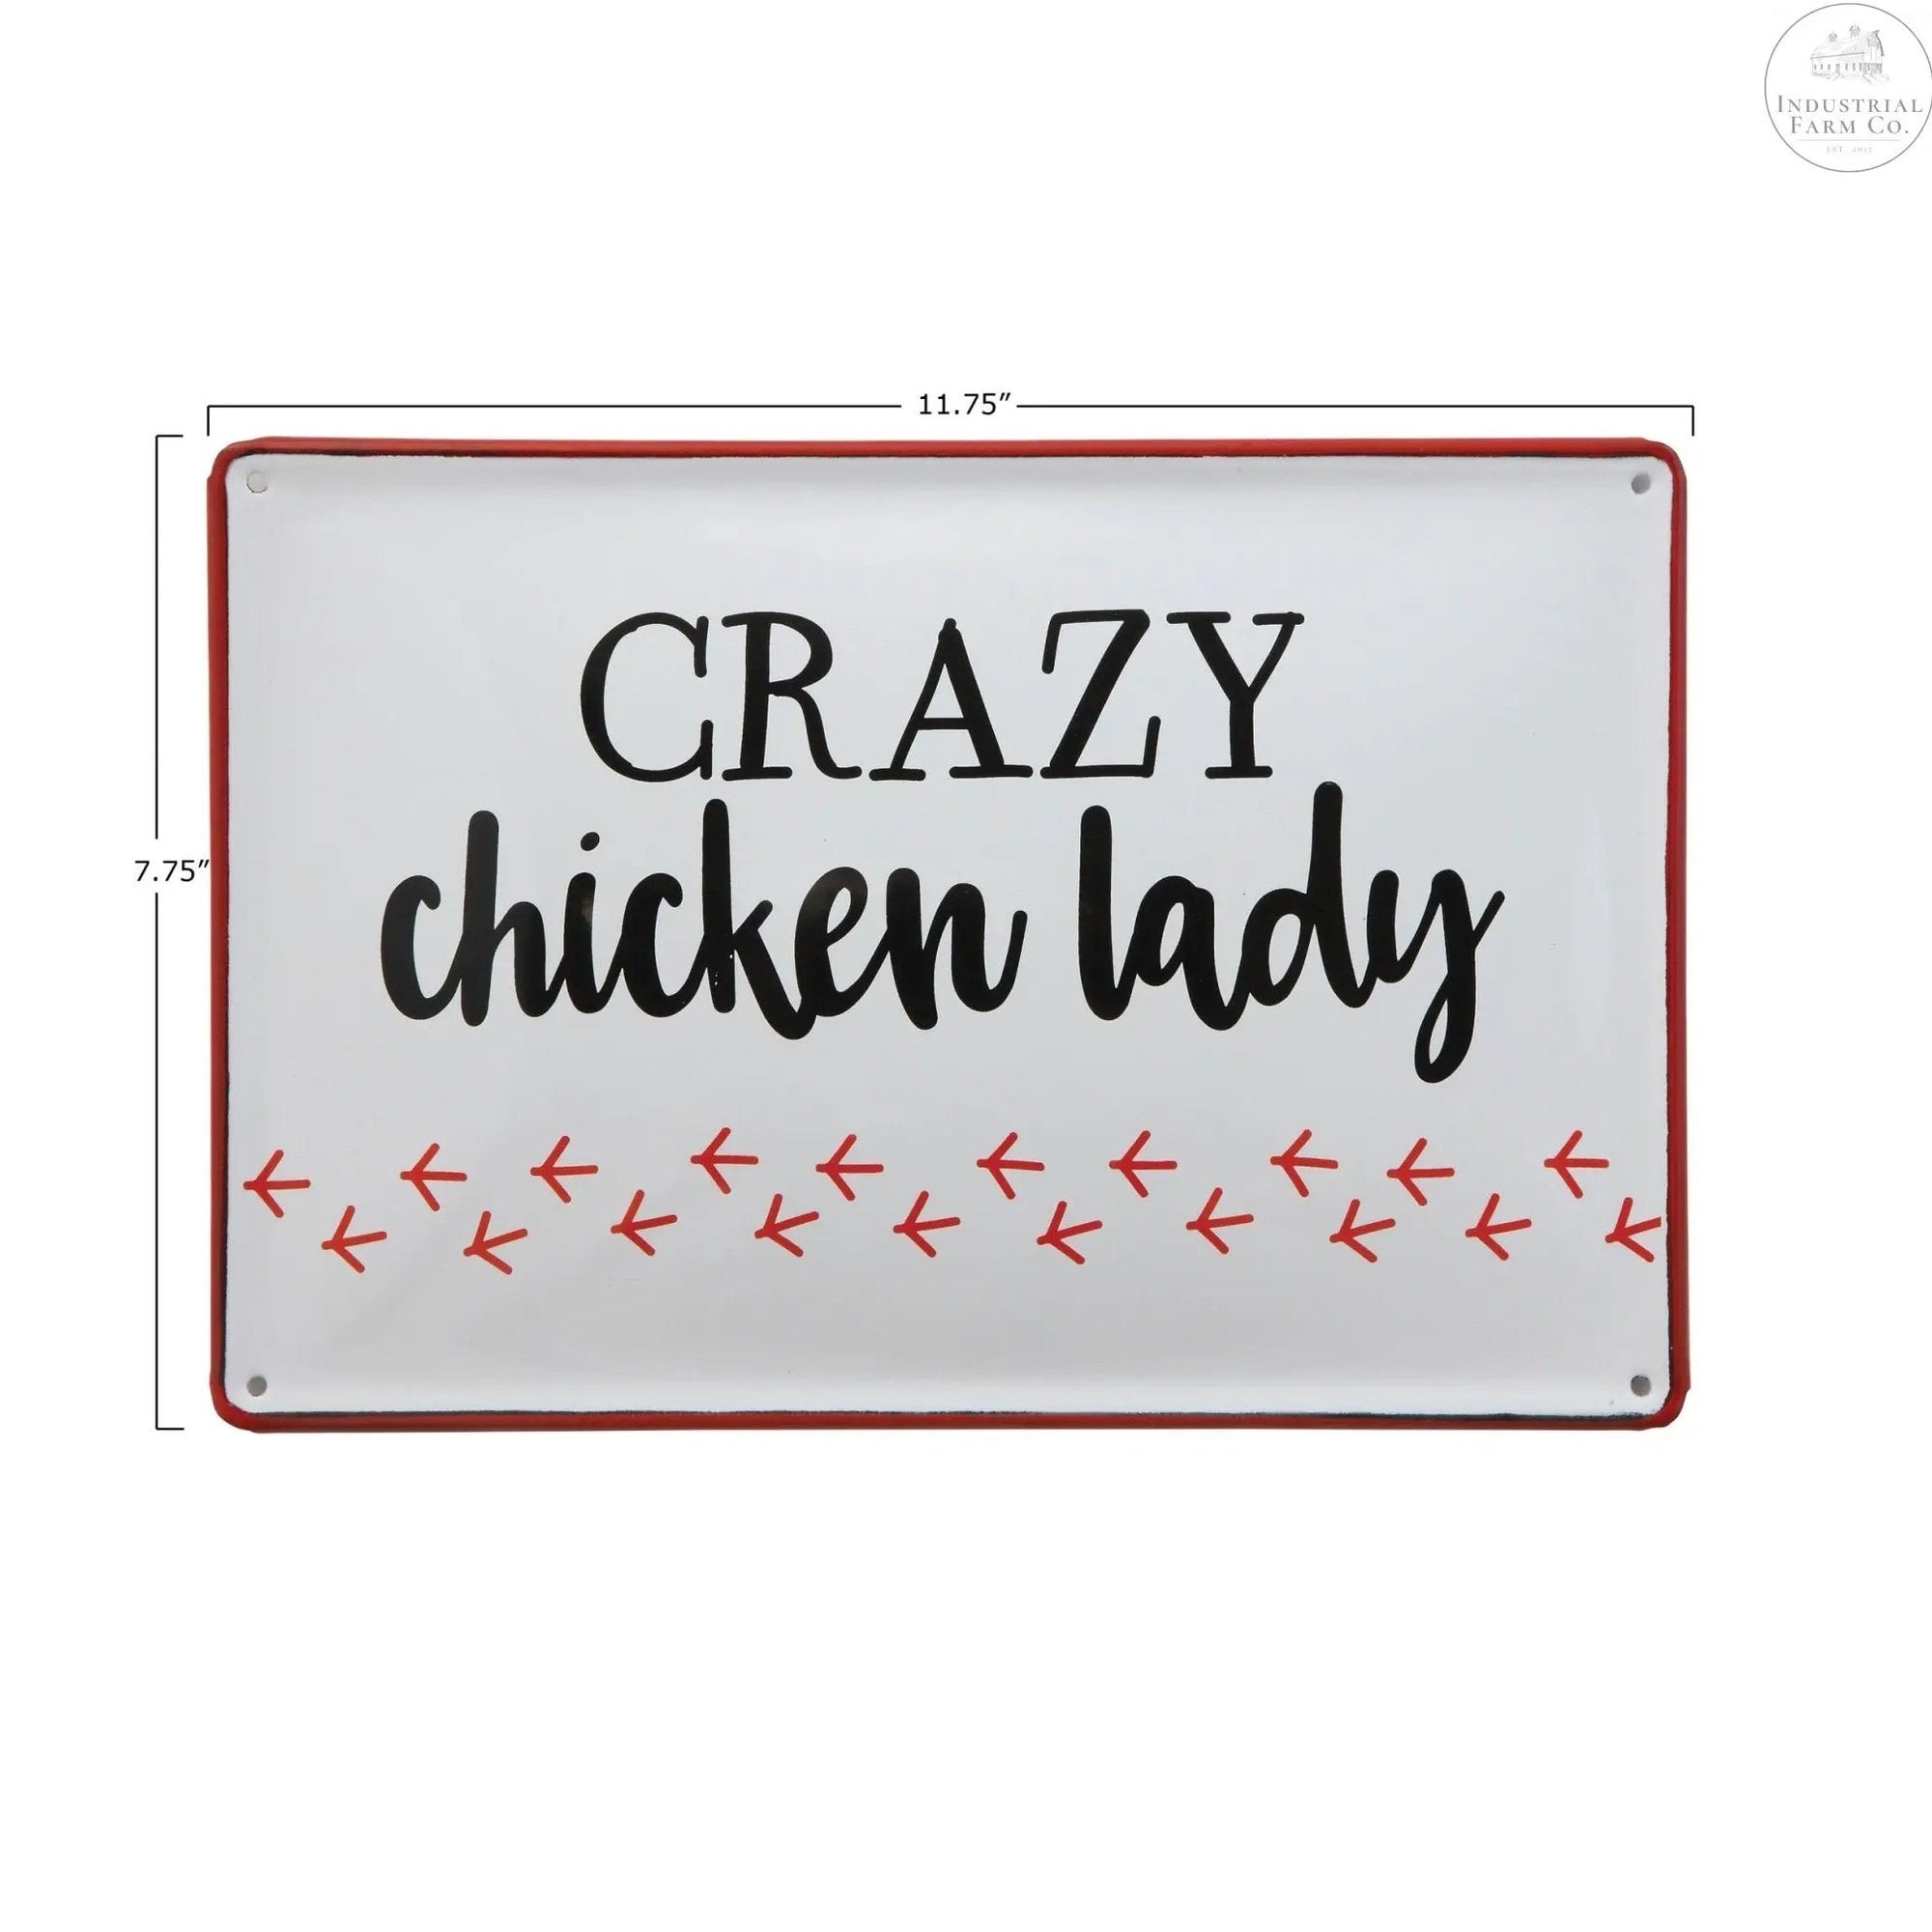 Enamel Farmhouse Chicken Lady Sign     | Industrial Farm Co